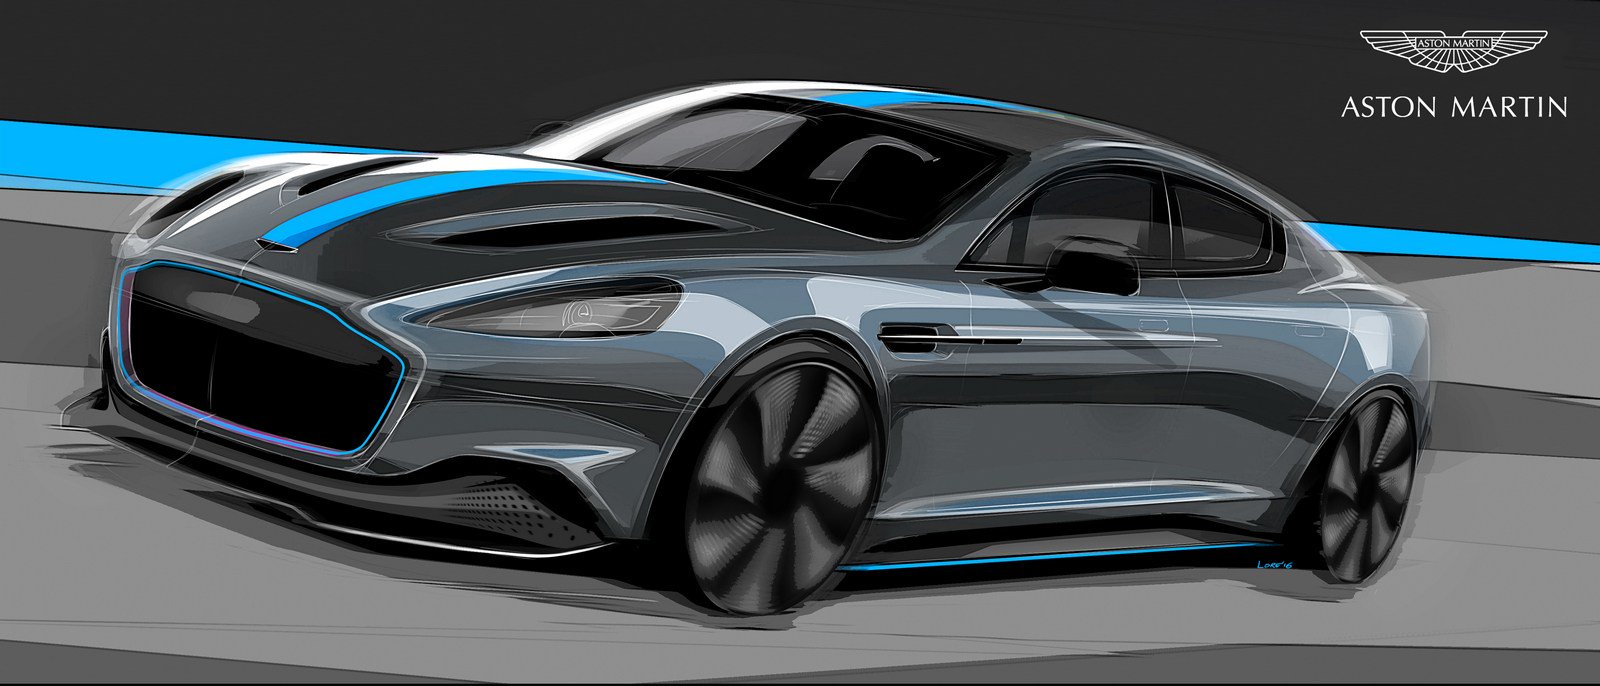 O Aston Martin RapidE será lançado em 2019